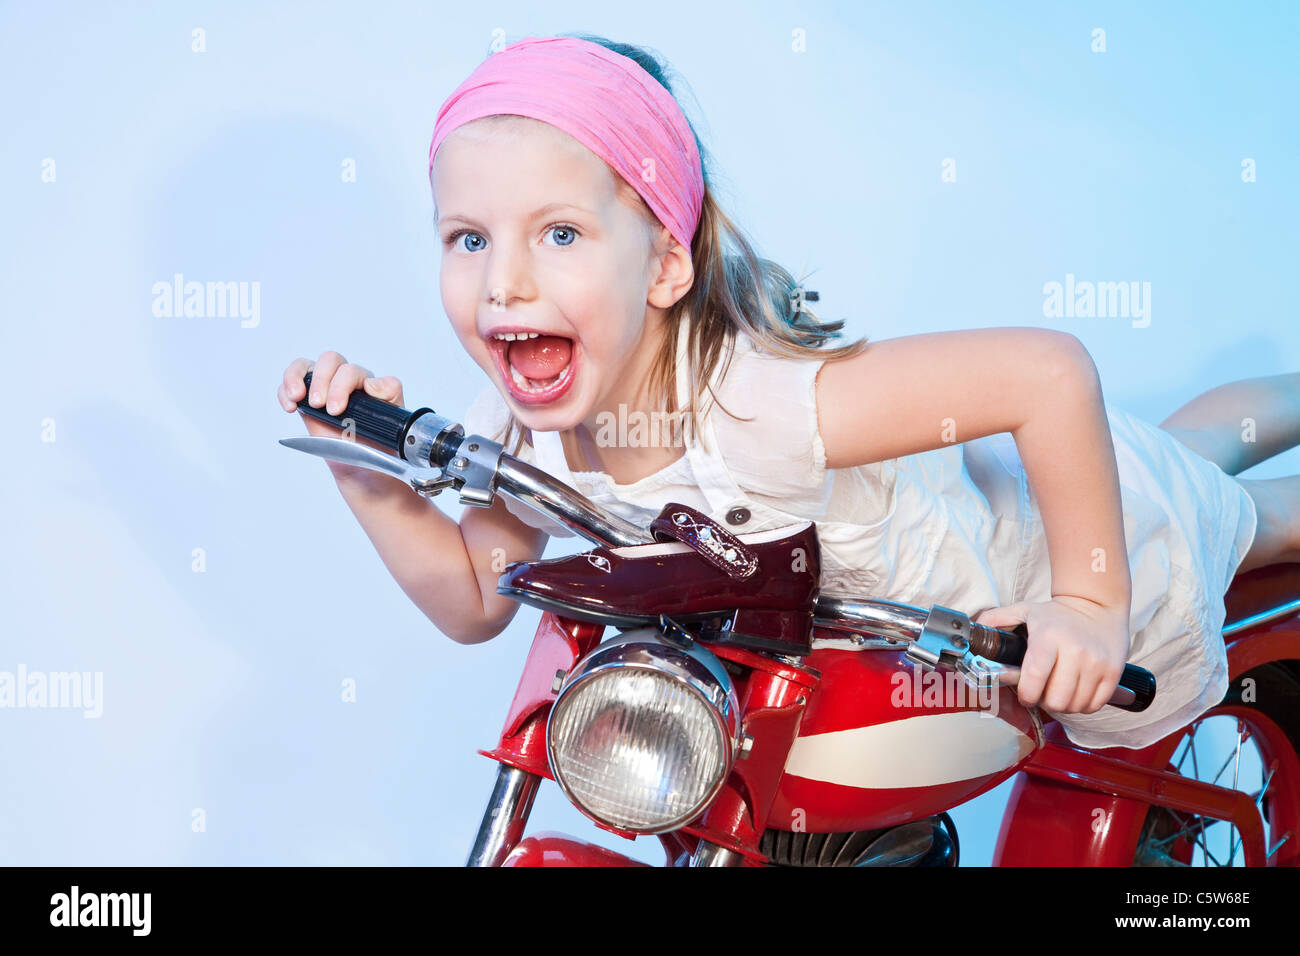 Allemagne, Landshut , little girl (4-5) carrousel équestre vélo, smiling Banque D'Images